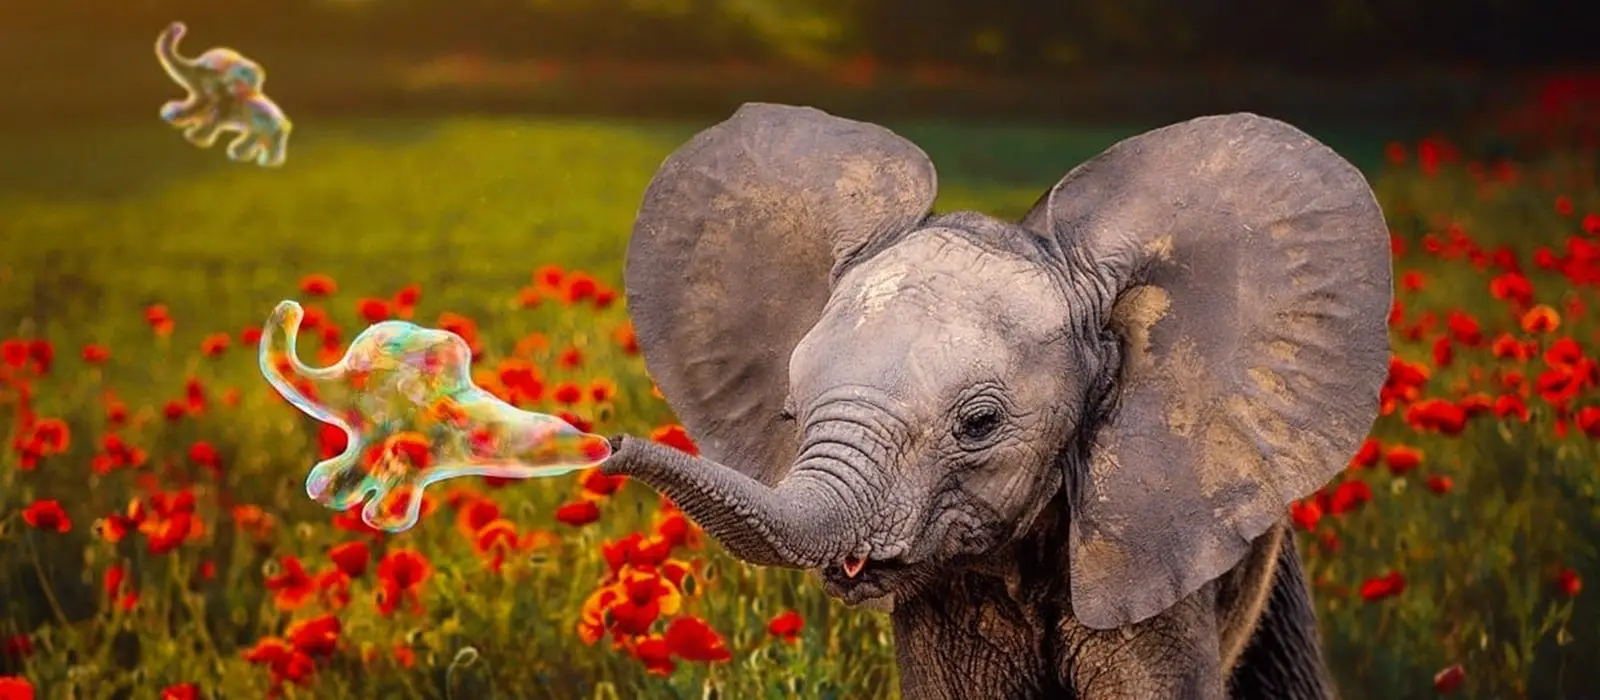 Elephant in flower patch